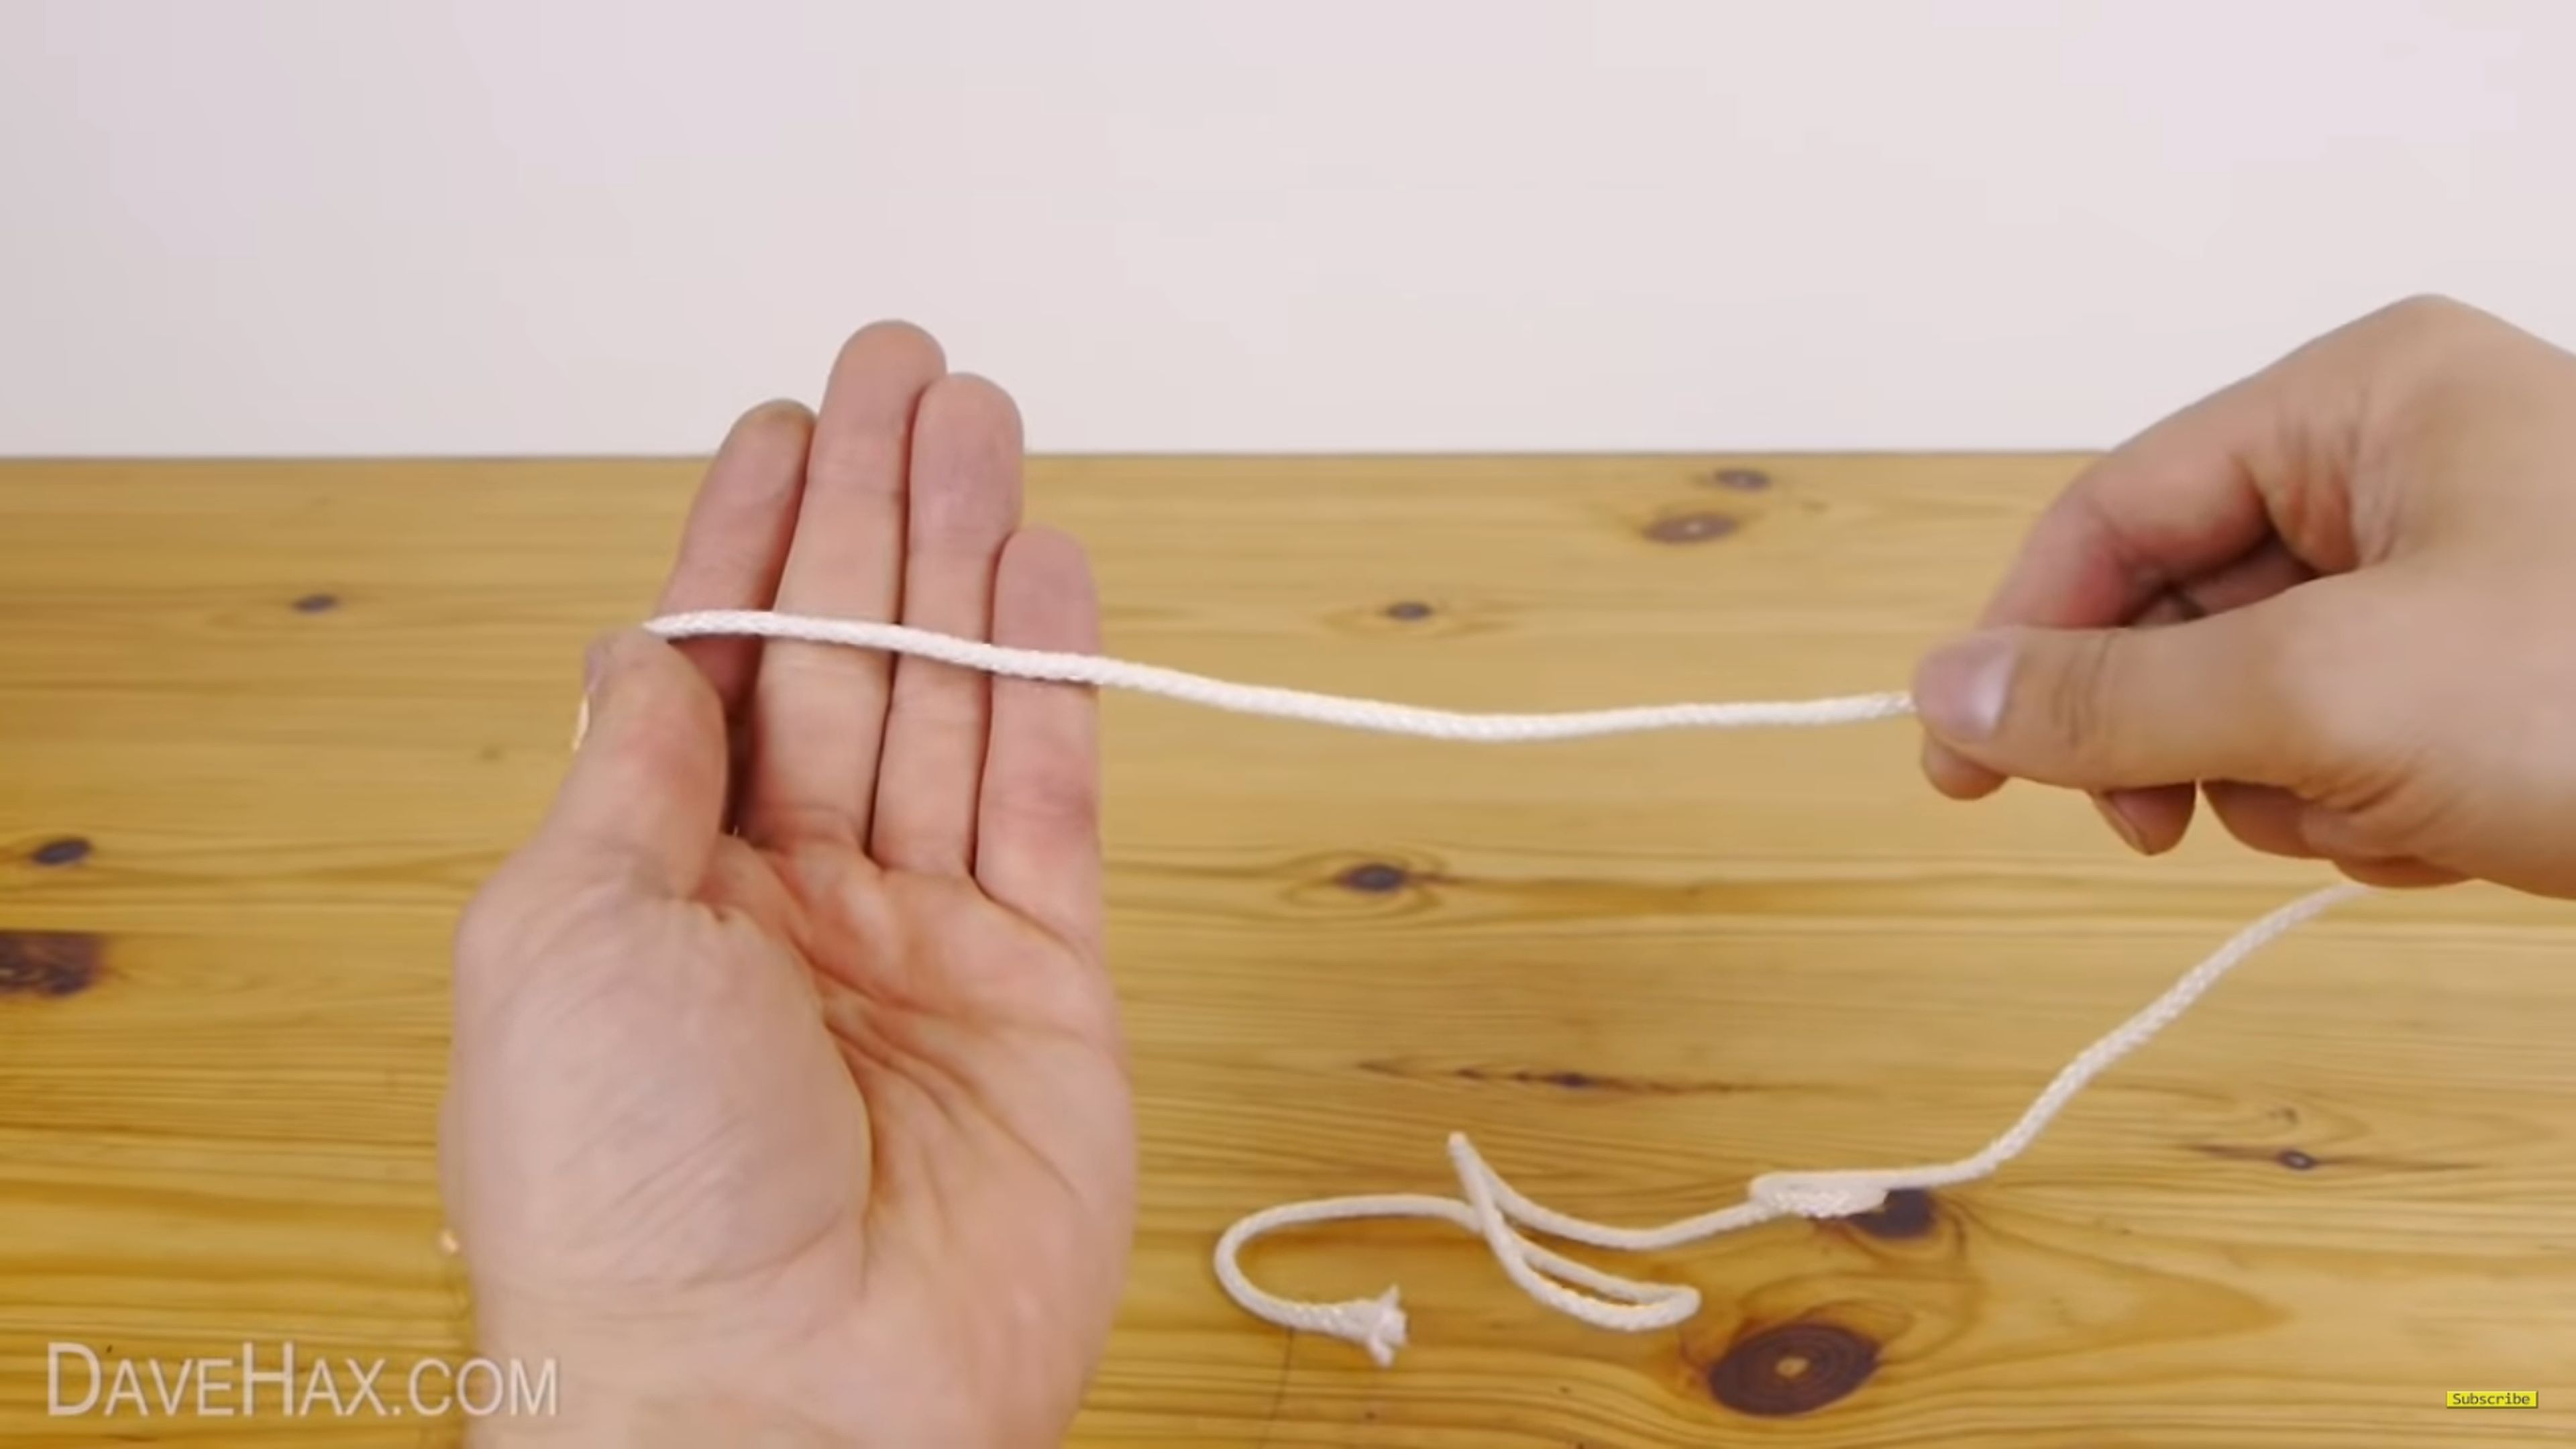 Cómo cortar una cuerda en segundos sin herramientas